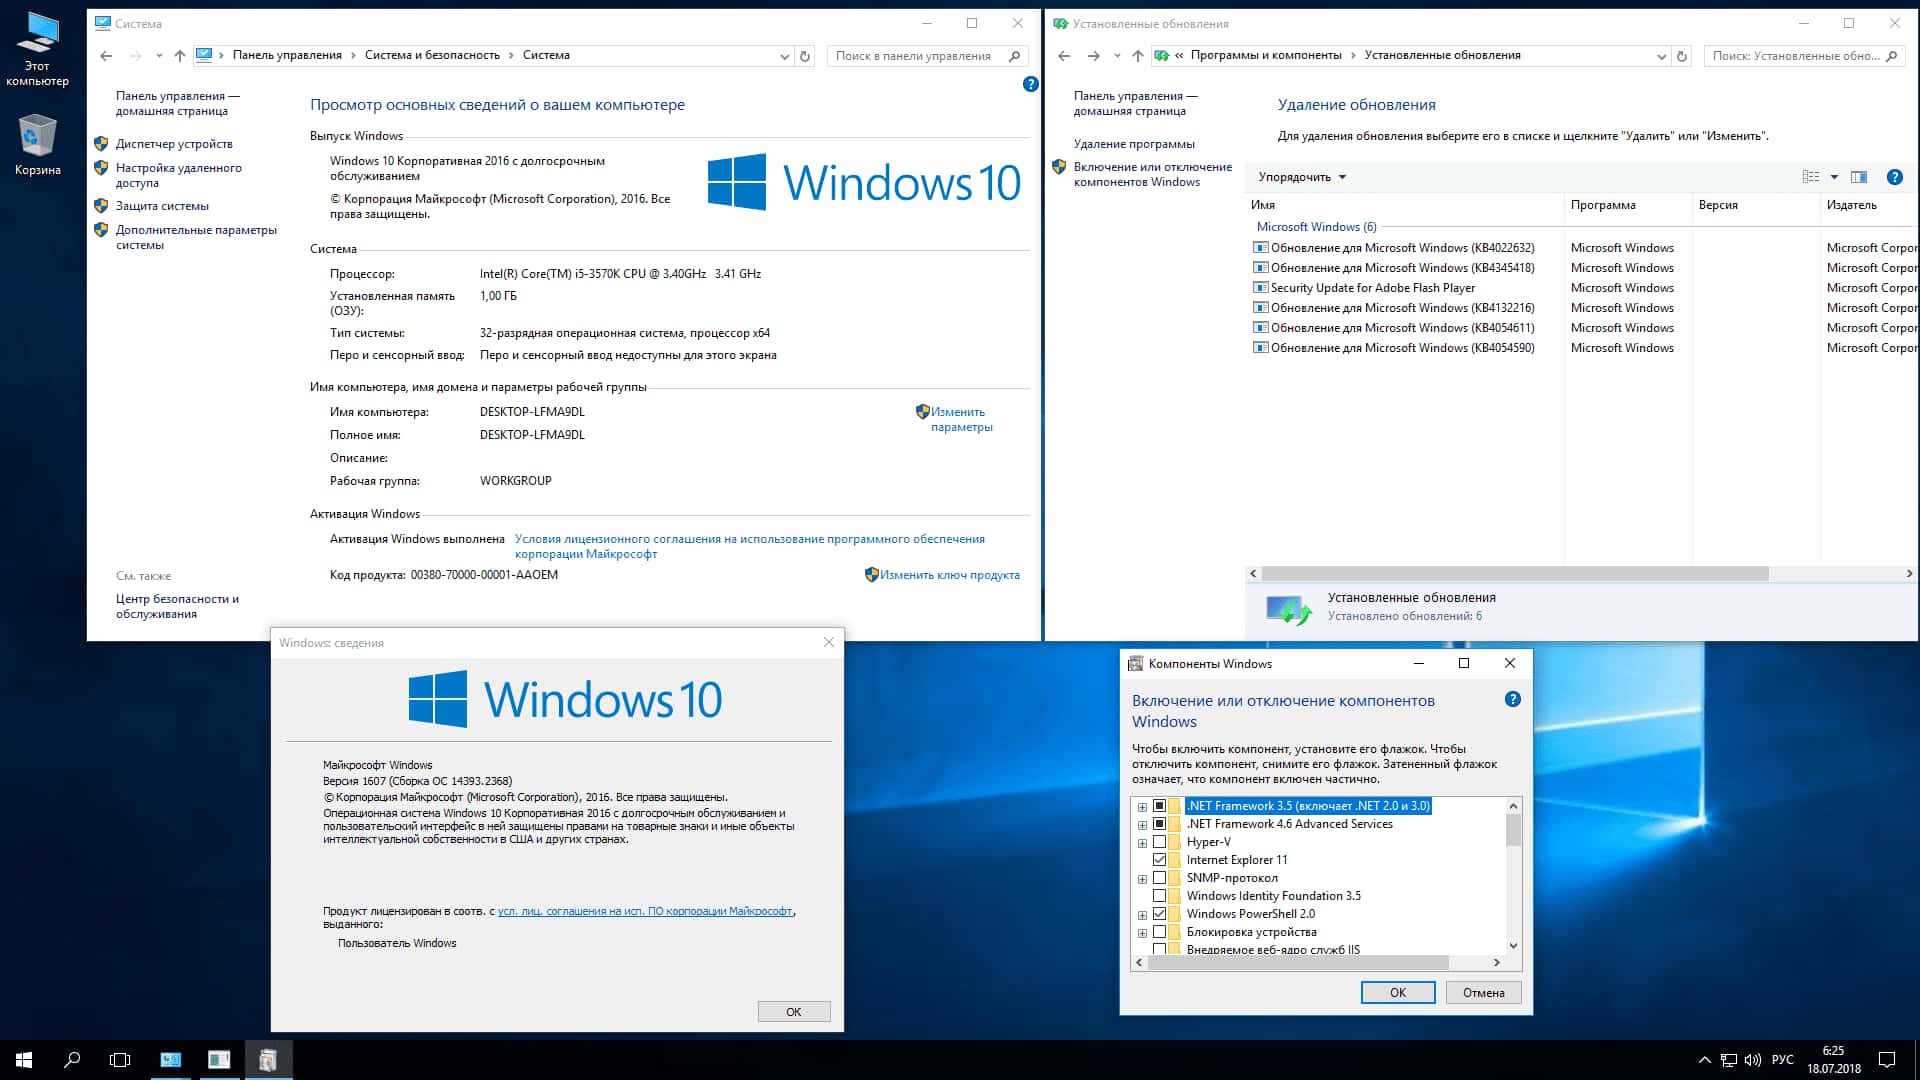 Windows 10 enterprise ключ. Windows 10 LTSB 2016. Windows 10 Enterprise 2016 LTSB. Ключи для активации винды 10 корпоративная. Windows 10 корпоративная активации ключик.